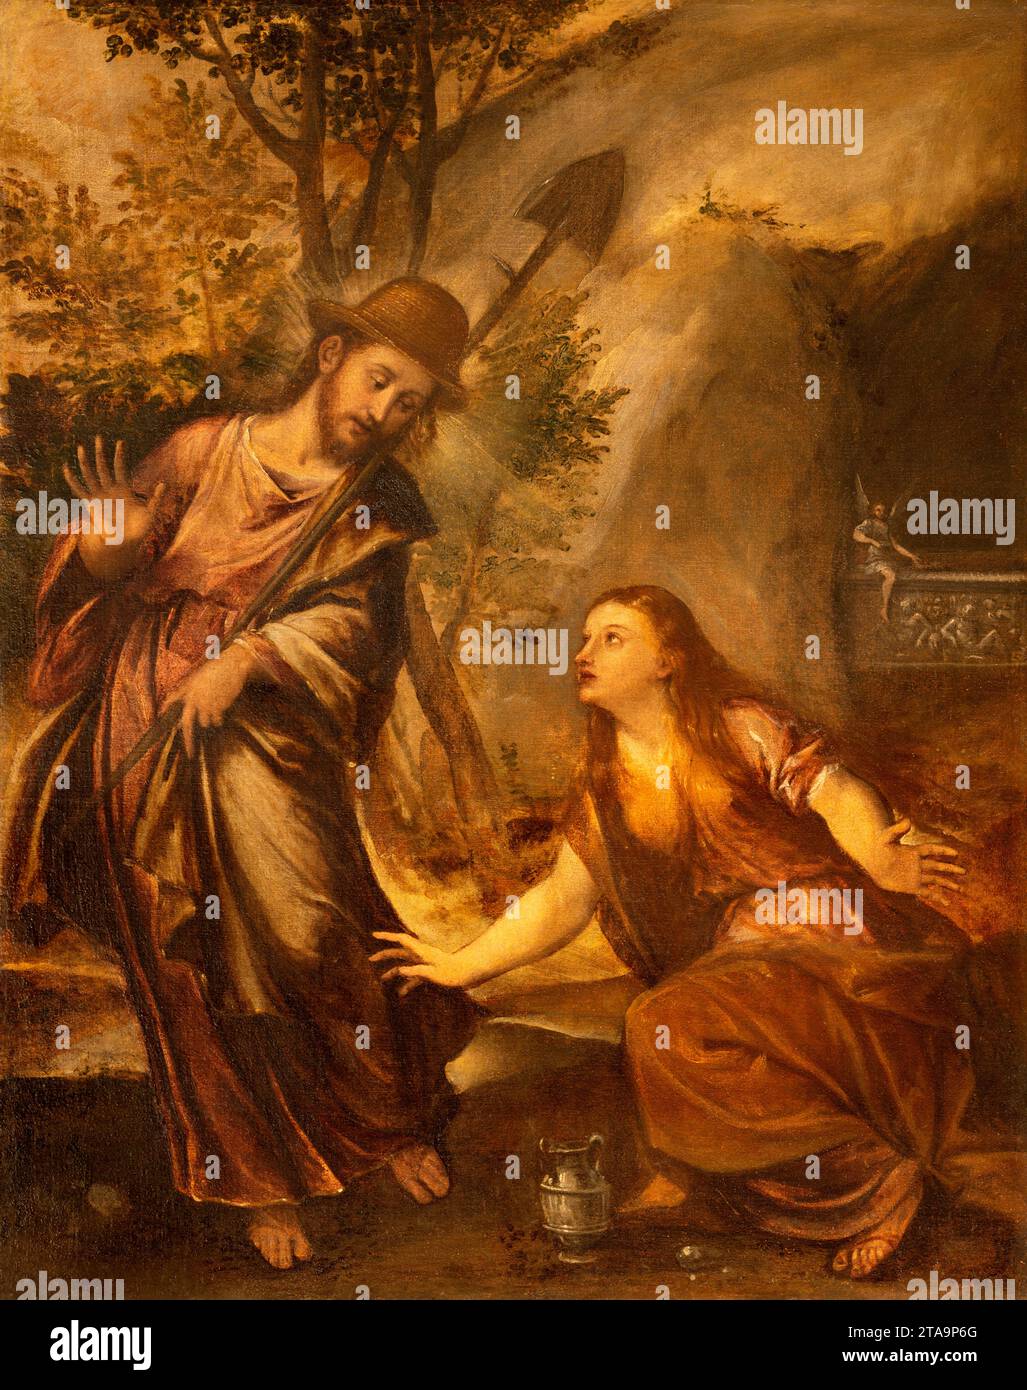 Vicenza - la peinture de l'apparence du Christ à Marie Madeleine après la résurrection 'Noli me tangere' Banque D'Images